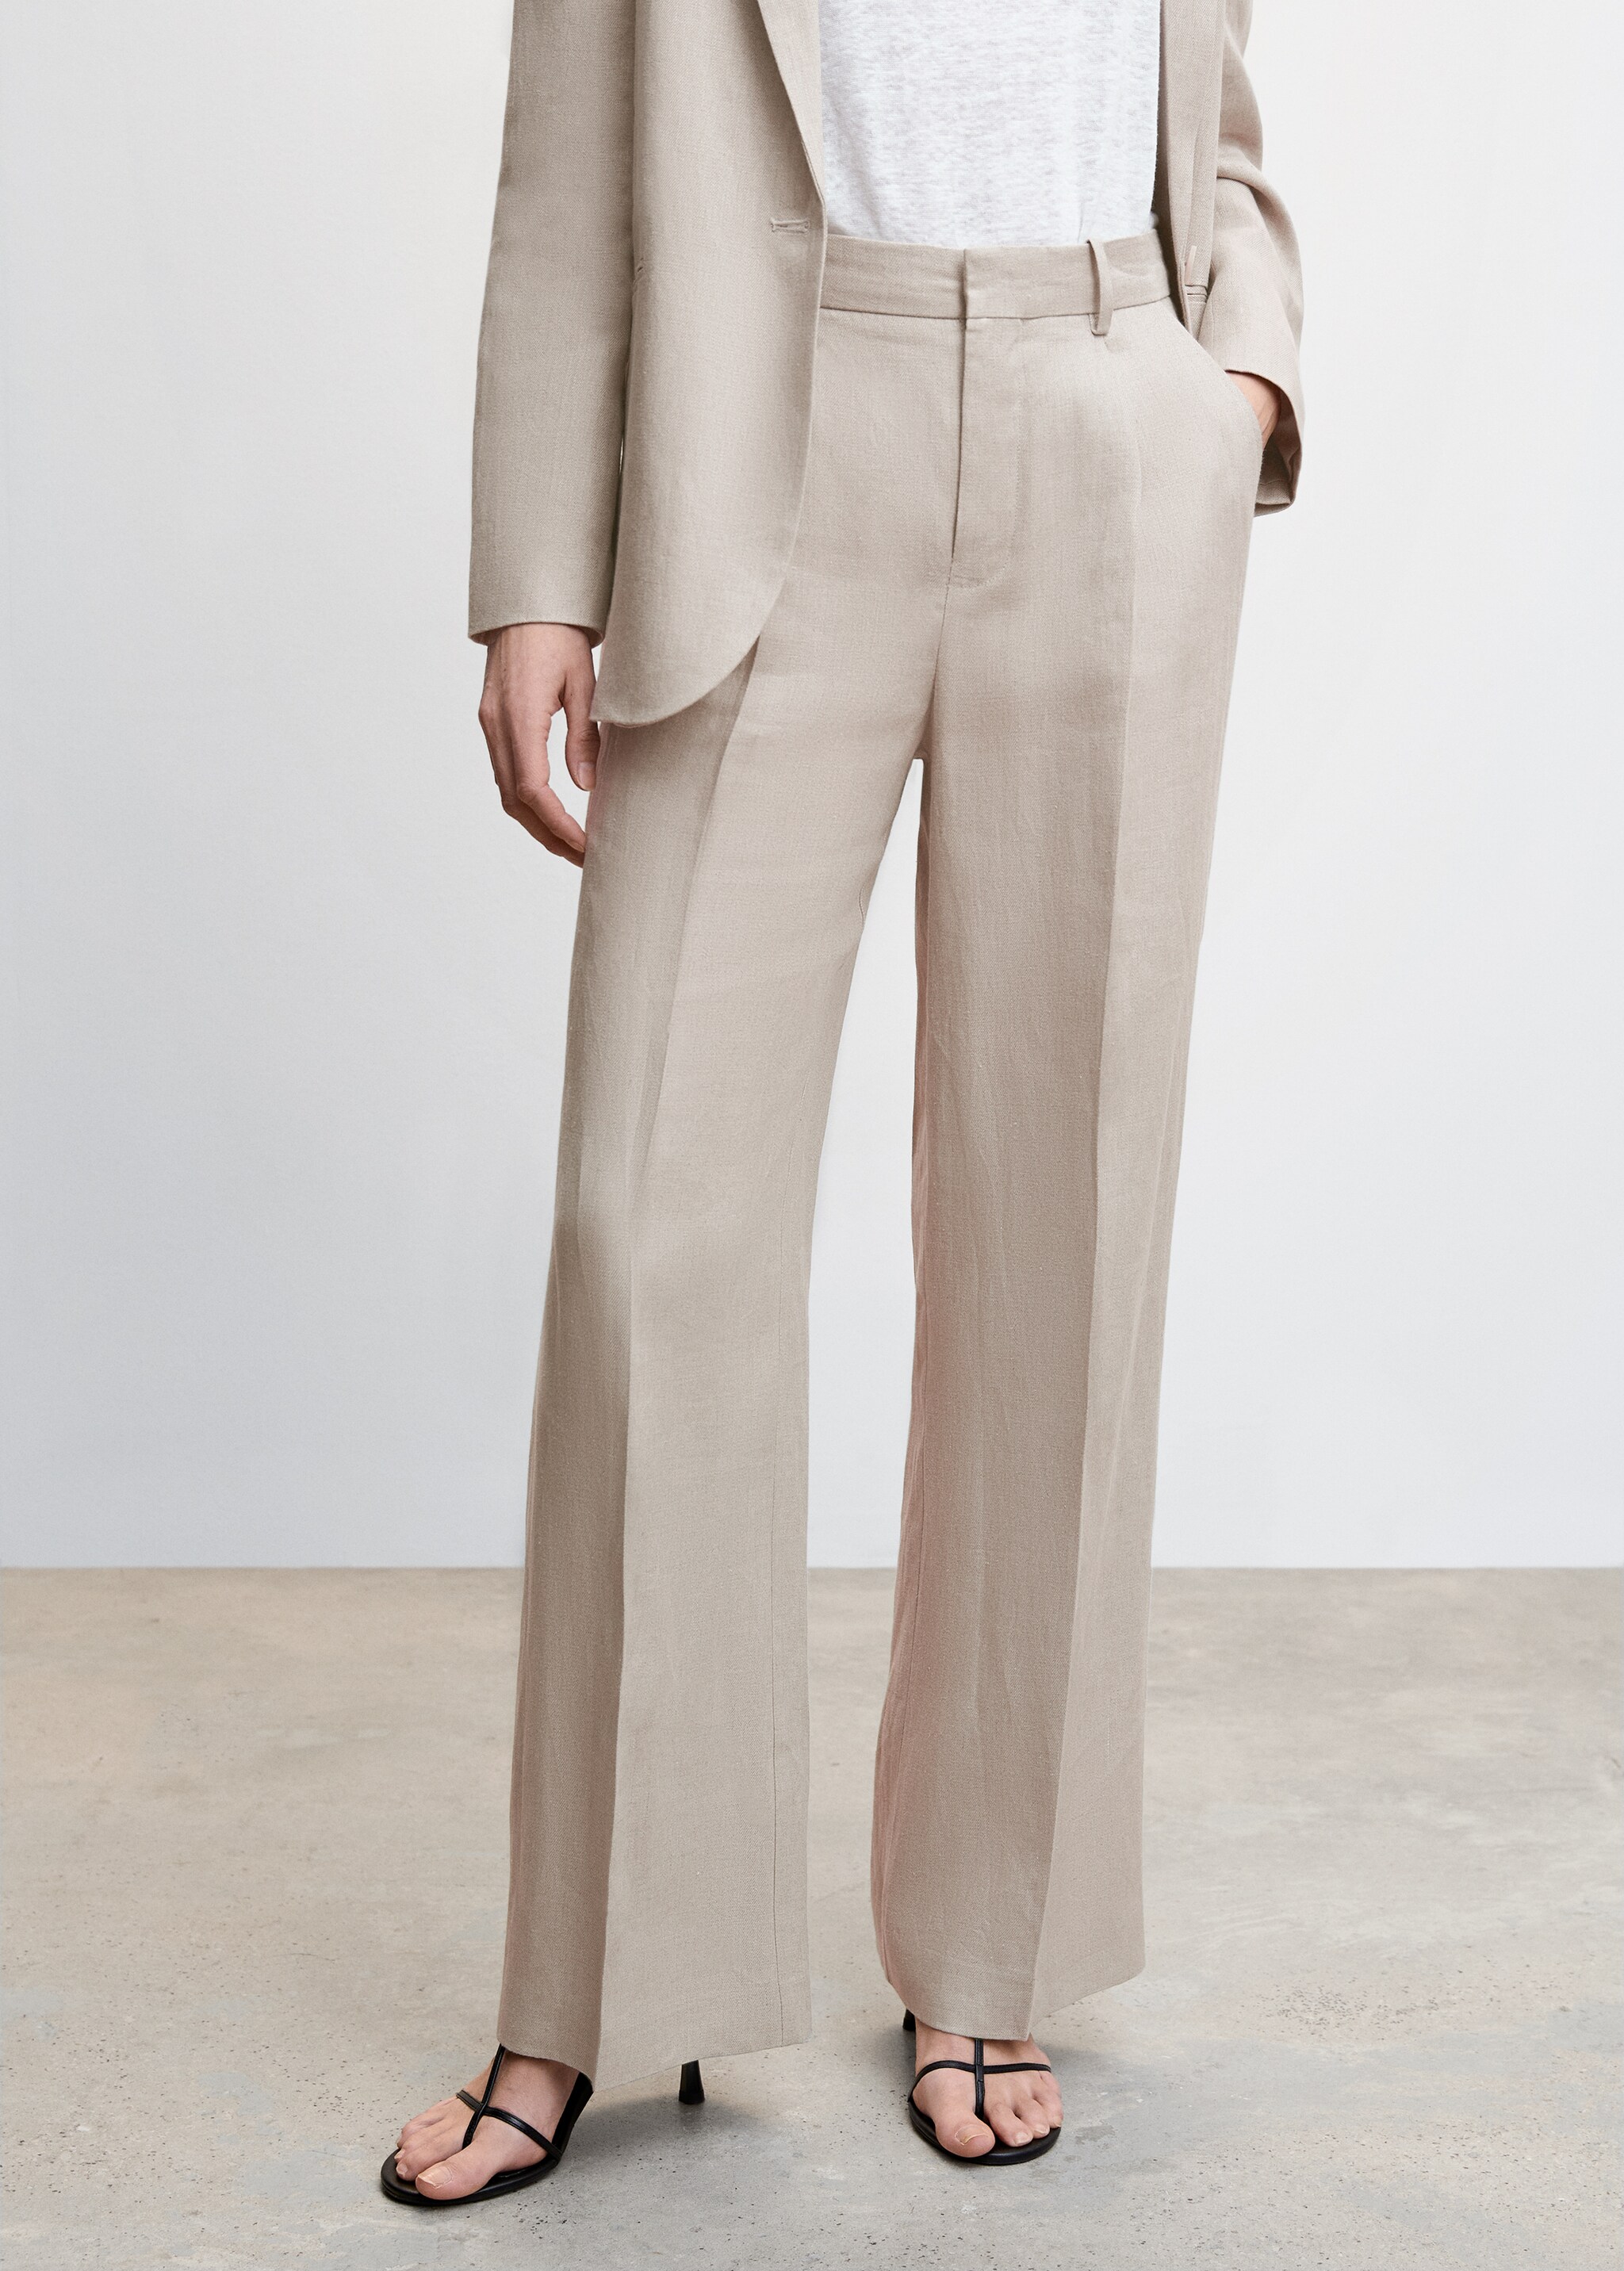 Linen suit trousers - Medium plane